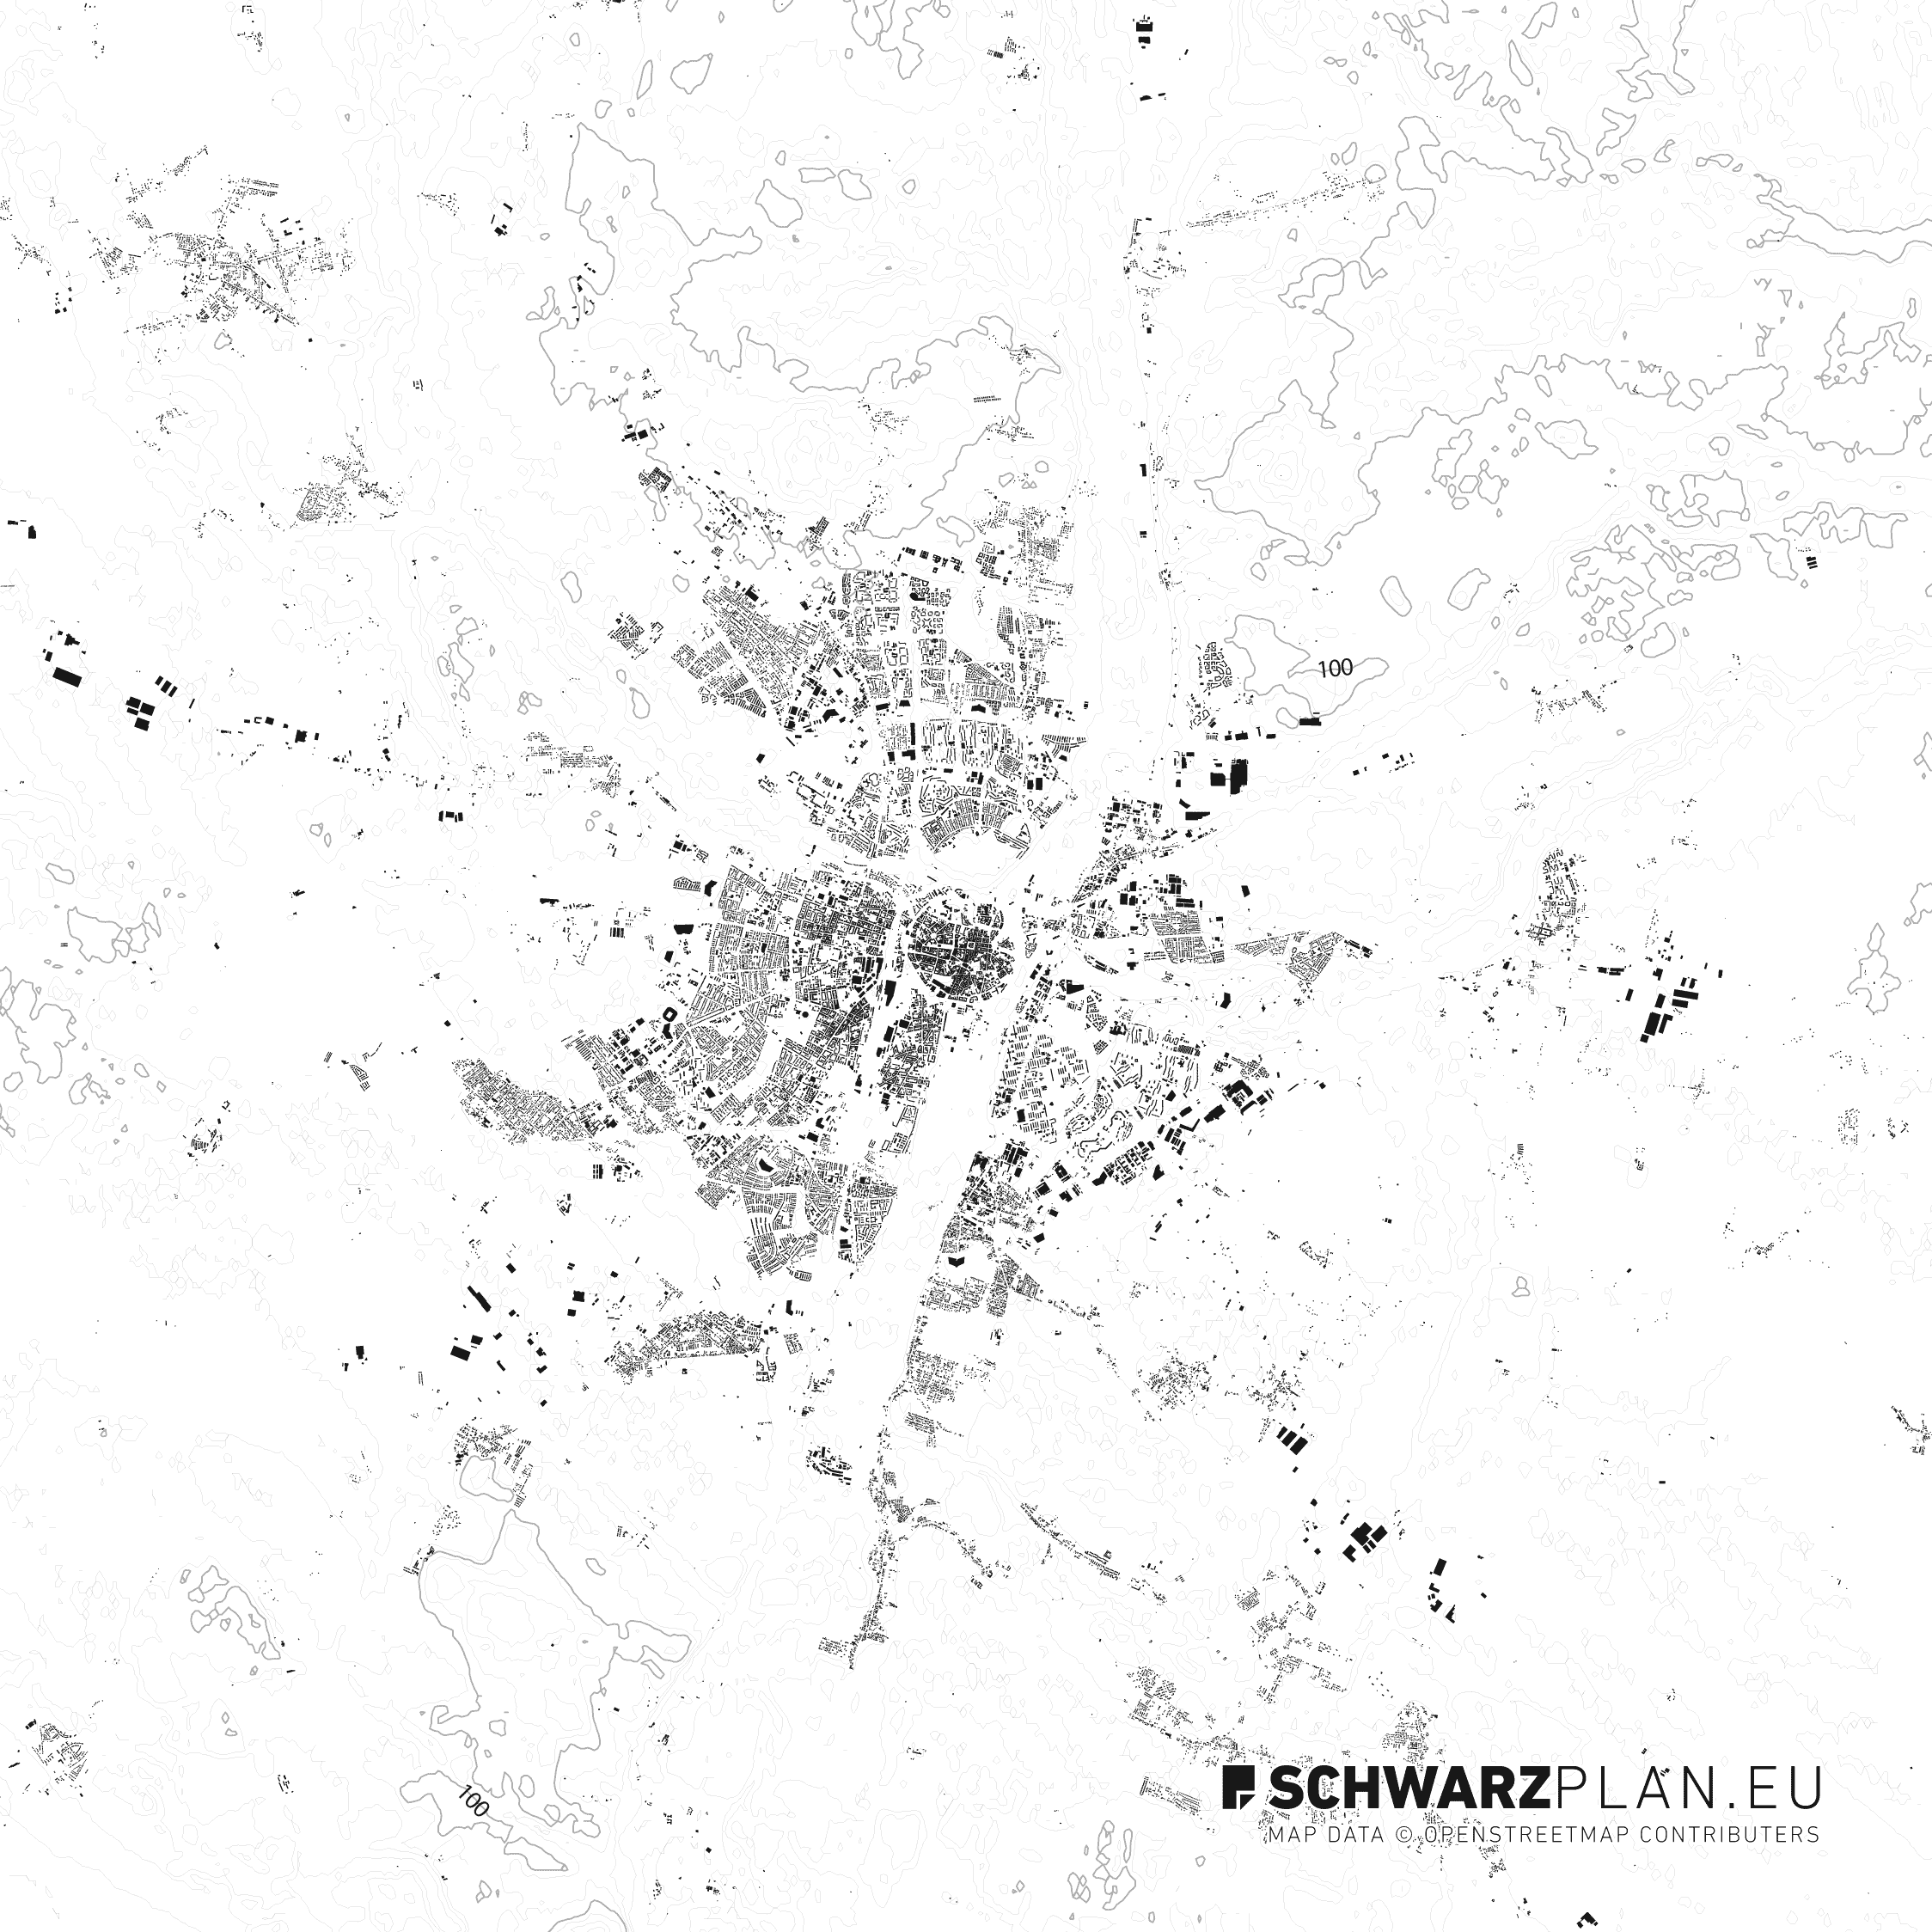 Figure Ground Plan of Poznań